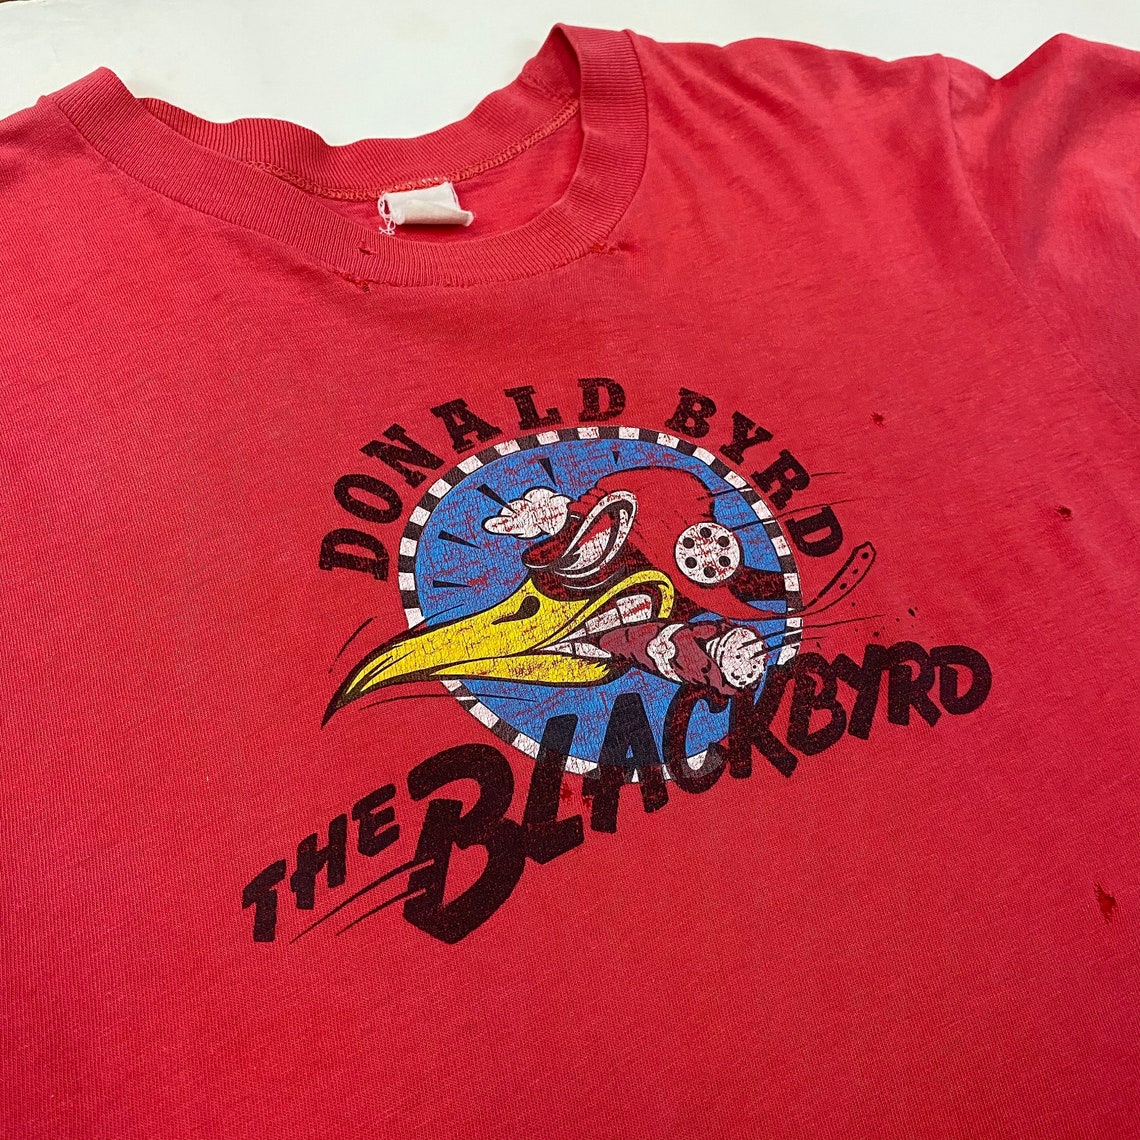 1970s Donald Byrd The Blackbyrd T-Shirt | Etsy